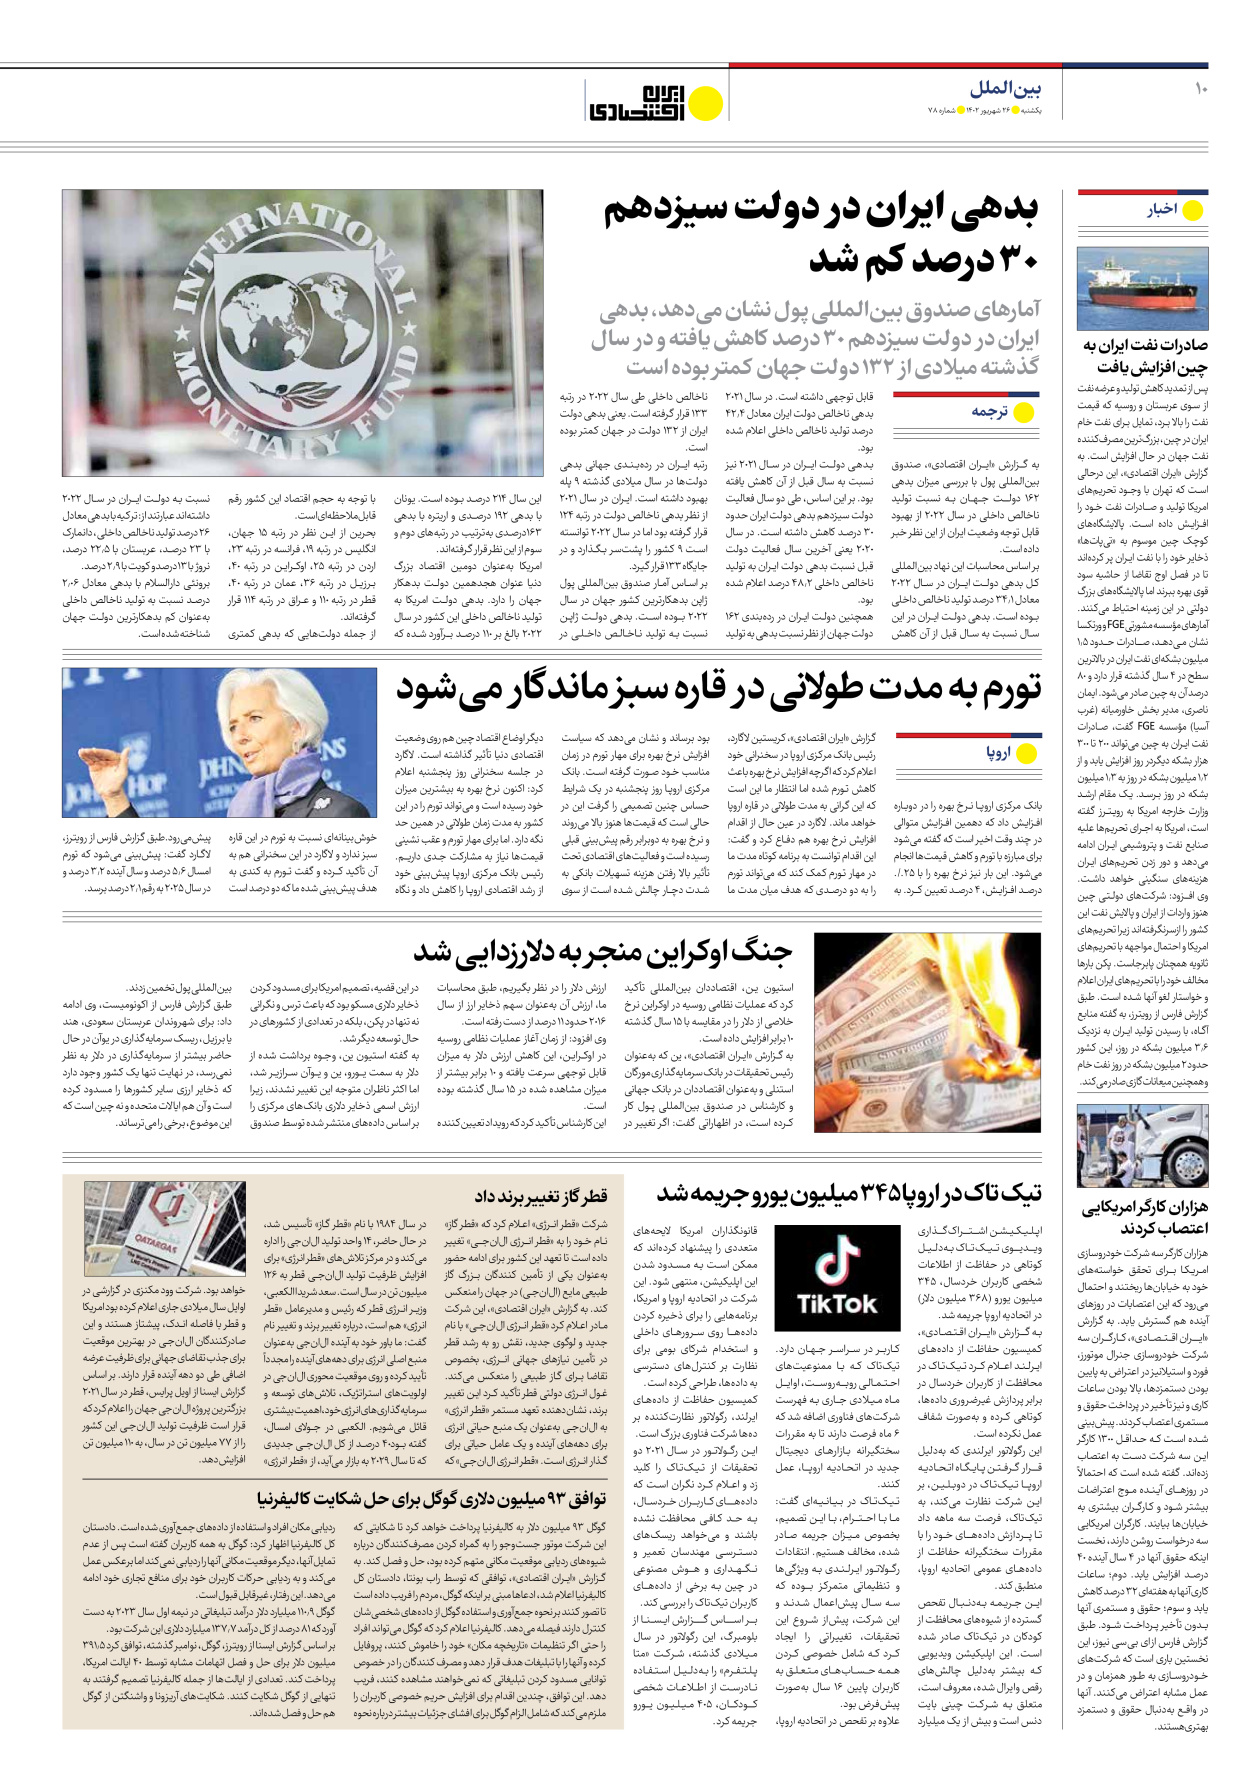 روزنامه ایران اقتصادی - شماره هفتاد و هشت - ۲۶ شهریور ۱۴۰۲ - صفحه ۱۰